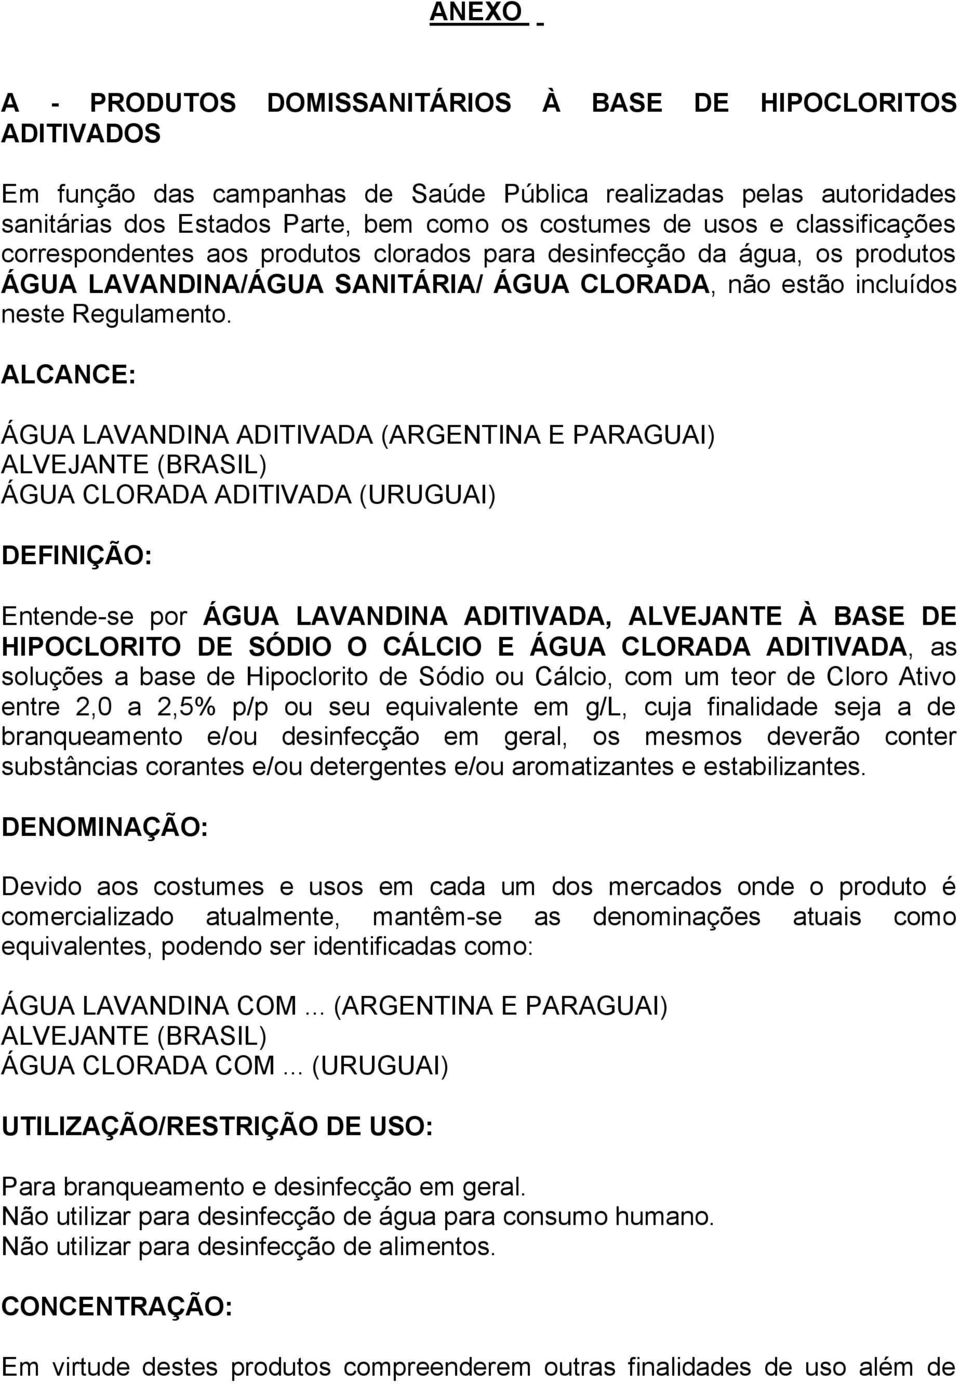 ALCANCE: ÁGUA LAVANDINA ADITIVADA (ARGENTINA E PARAGUAI) ALVEJANTE (BRASIL) ÁGUA CLORADA ADITIVADA (URUGUAI) DEFINIÇÃO: Entende-se por ÁGUA LAVANDINA ADITIVADA, ALVEJANTE À BASE DE HIPOCLORITO DE